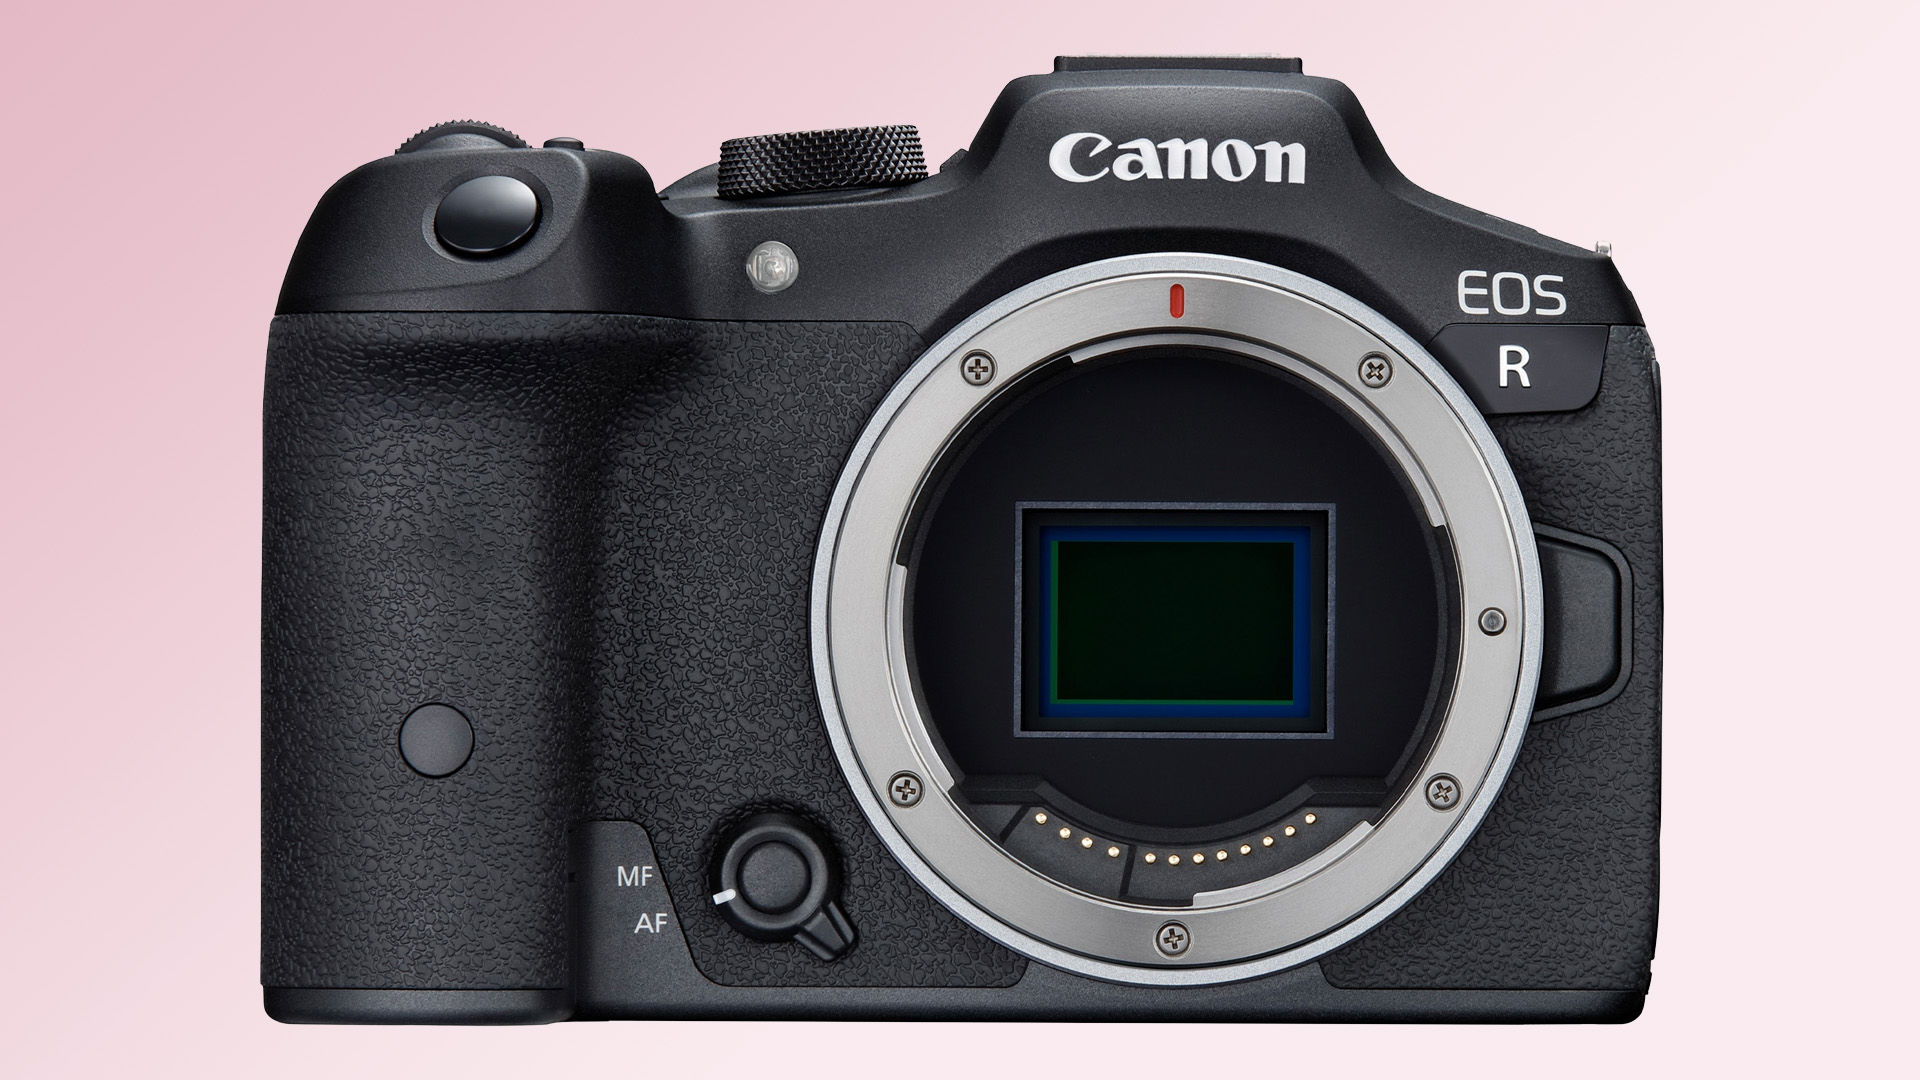  Макет камеры Canon EOS R50 на розовом фоне